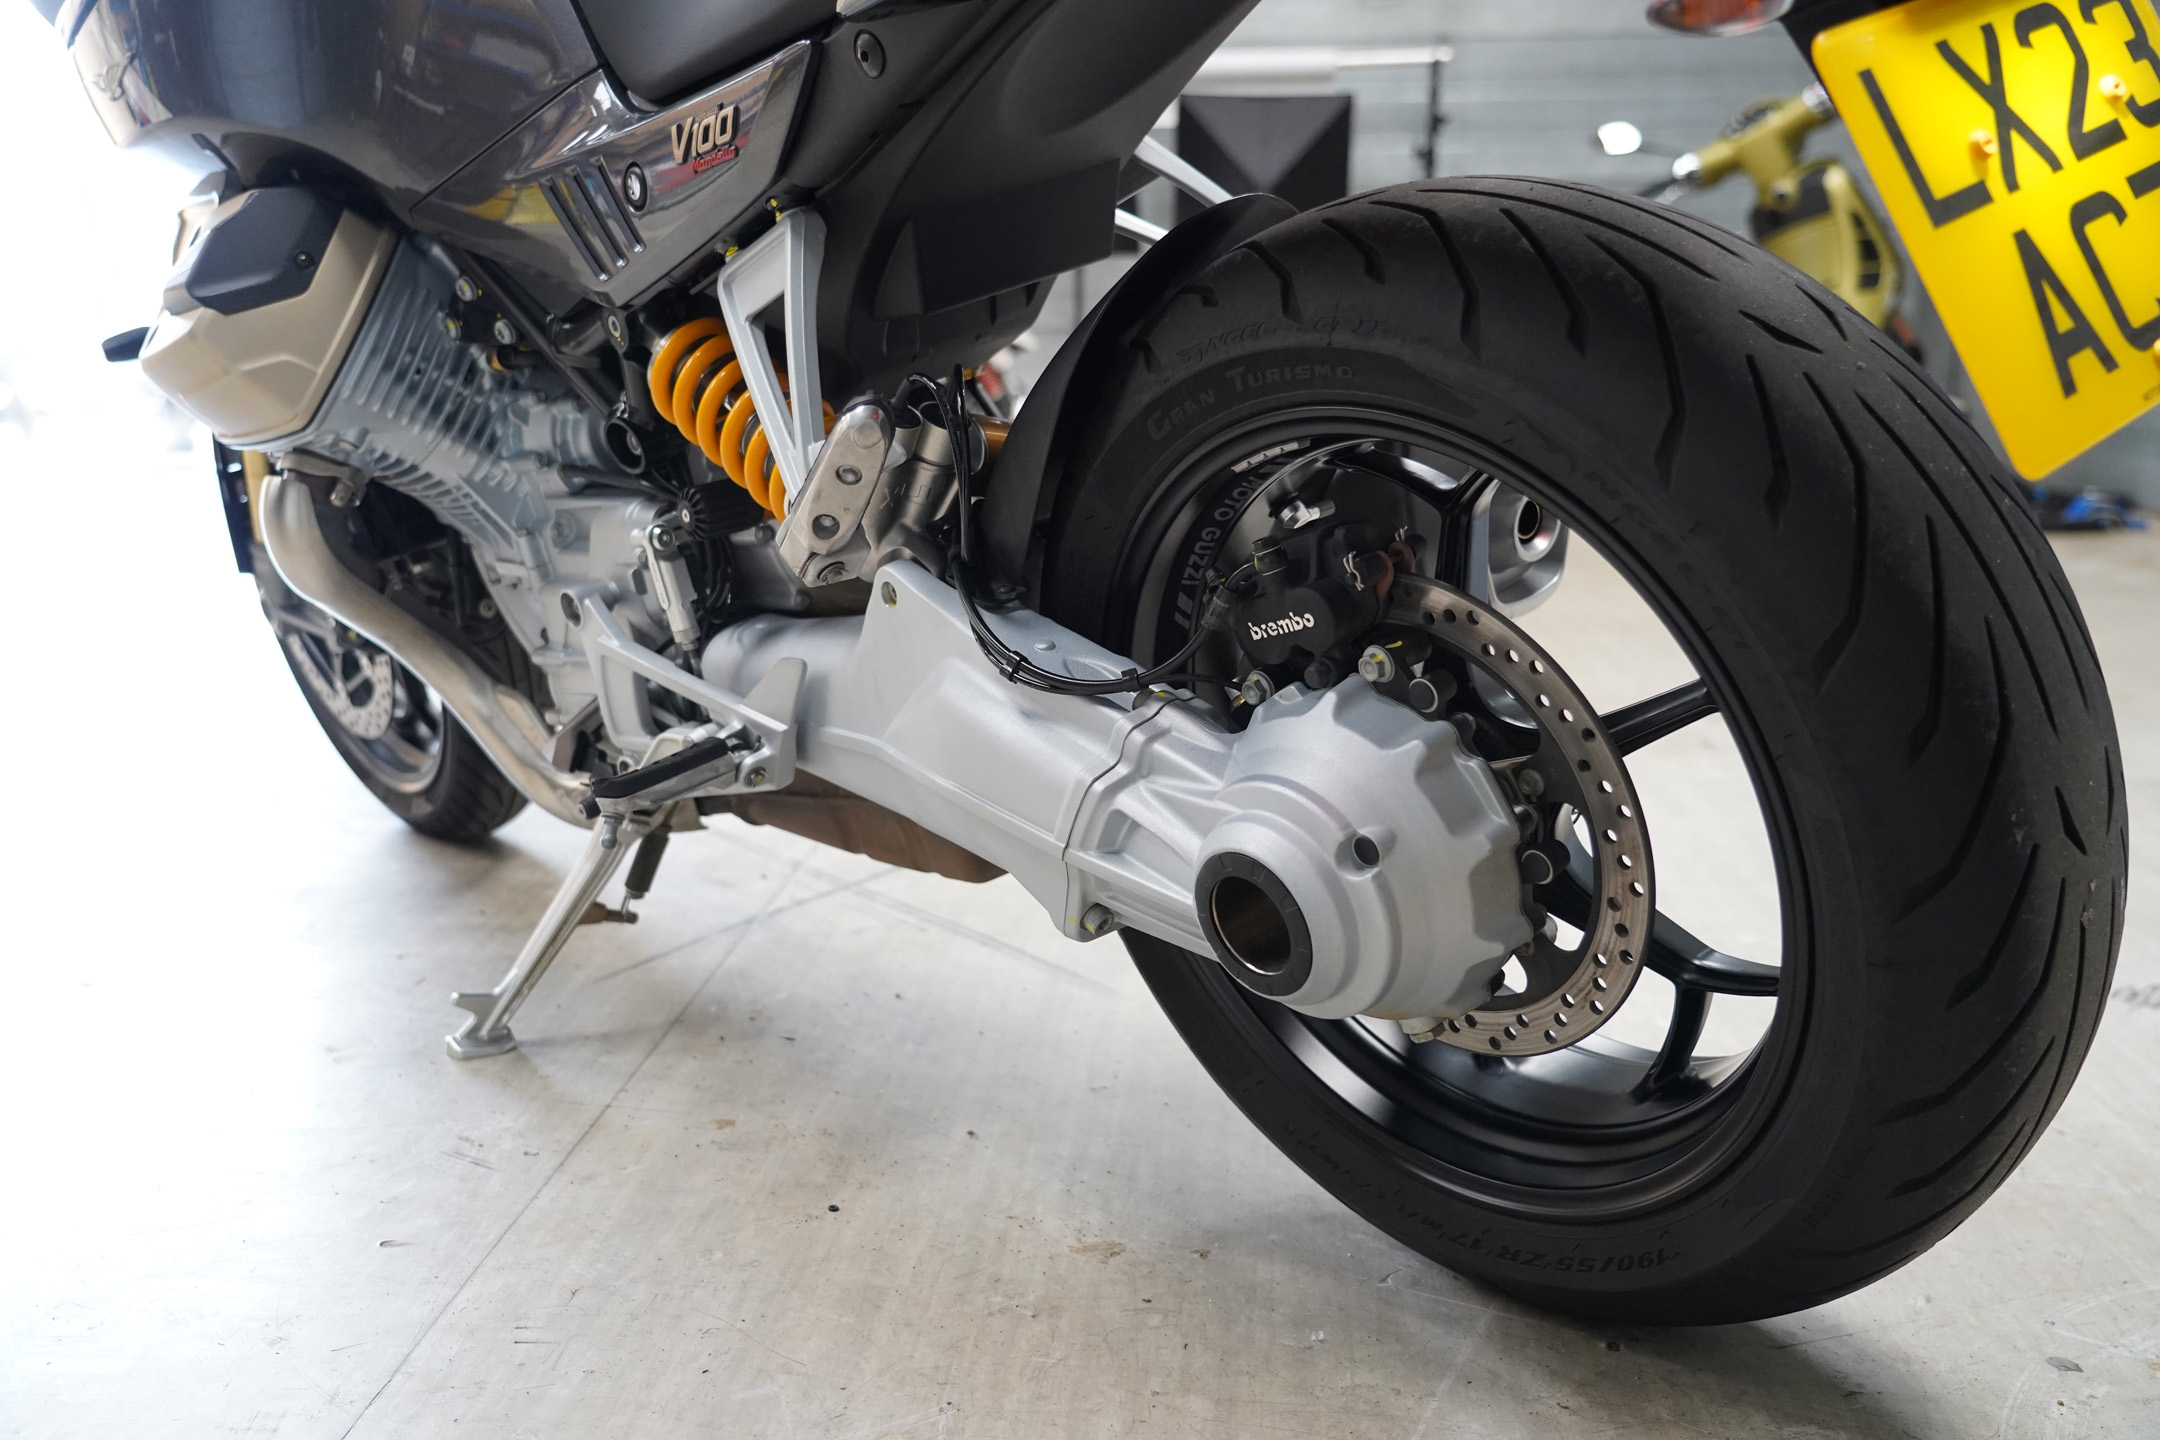 Brakes, Shaft drive, suspension on the Moto Guzzi V100 Mandello S